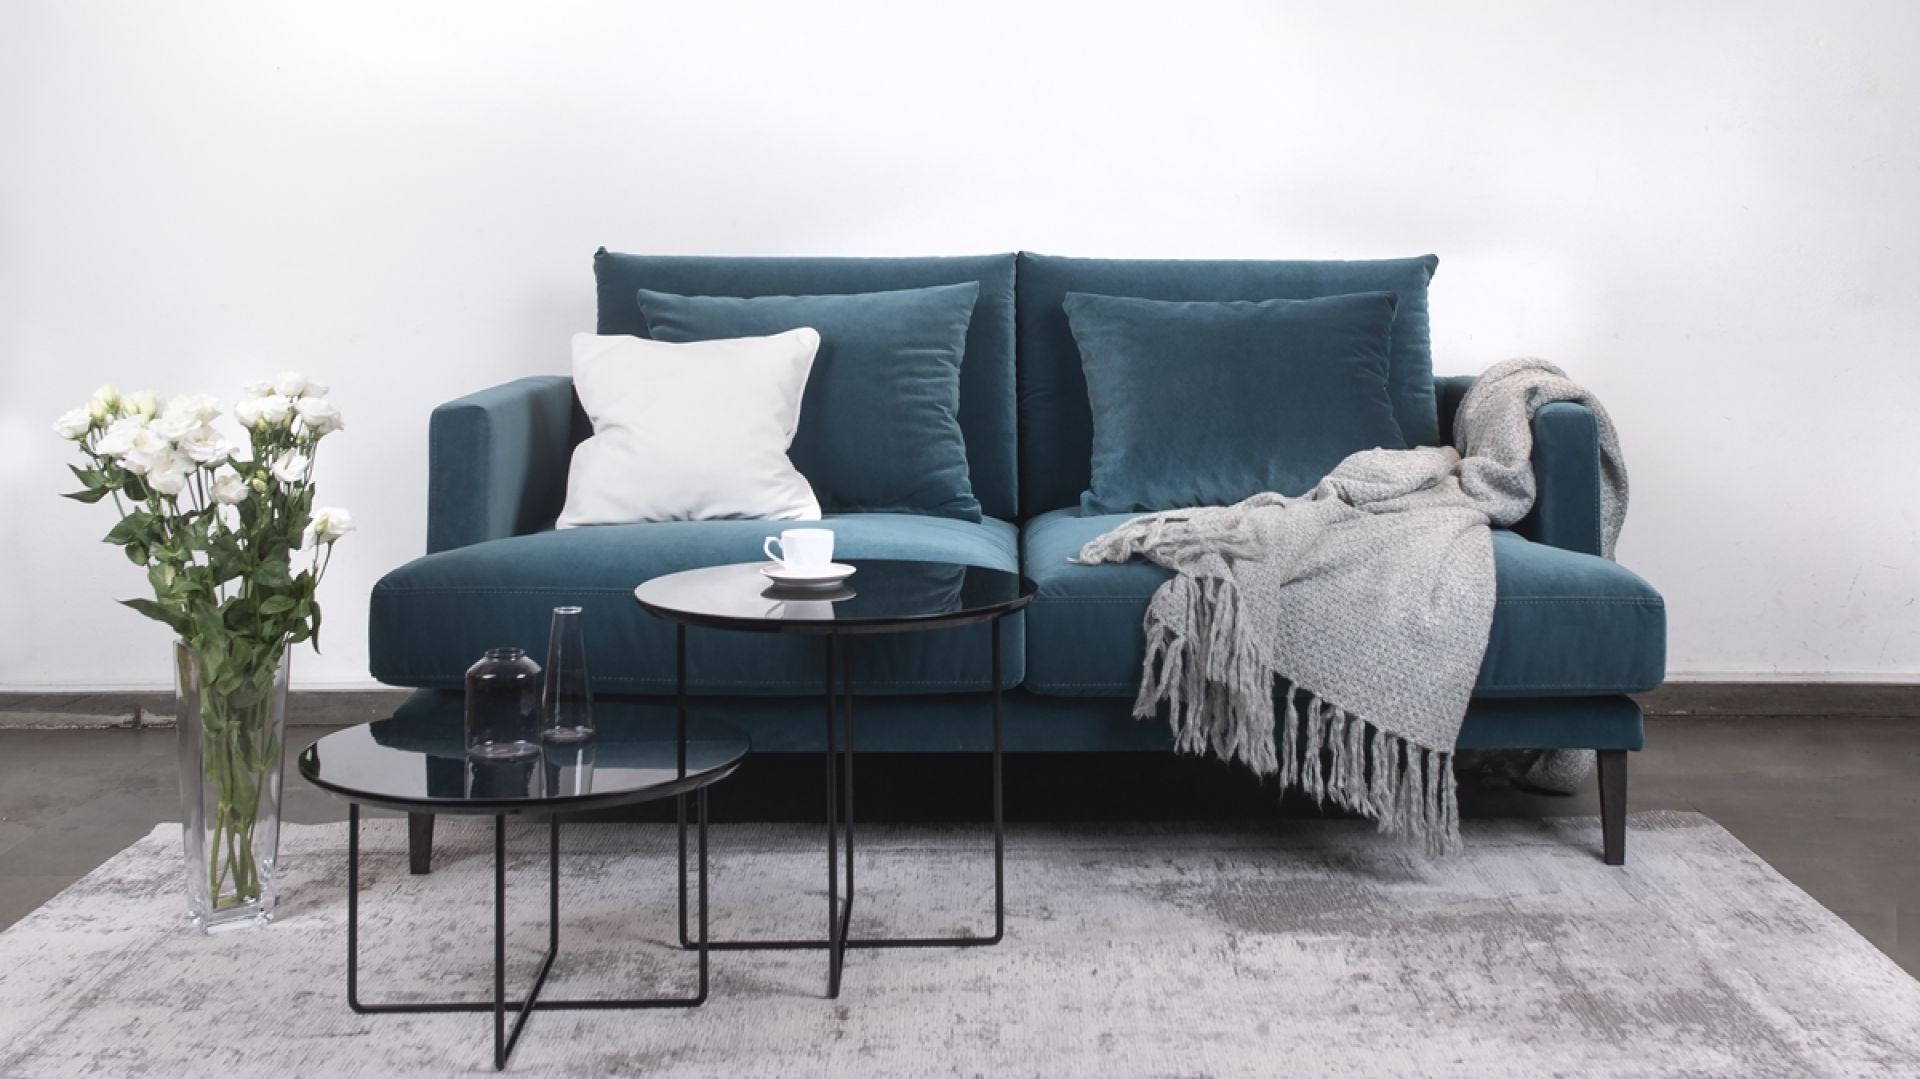 Meble do salonu - przykłady nowoczesnych sof